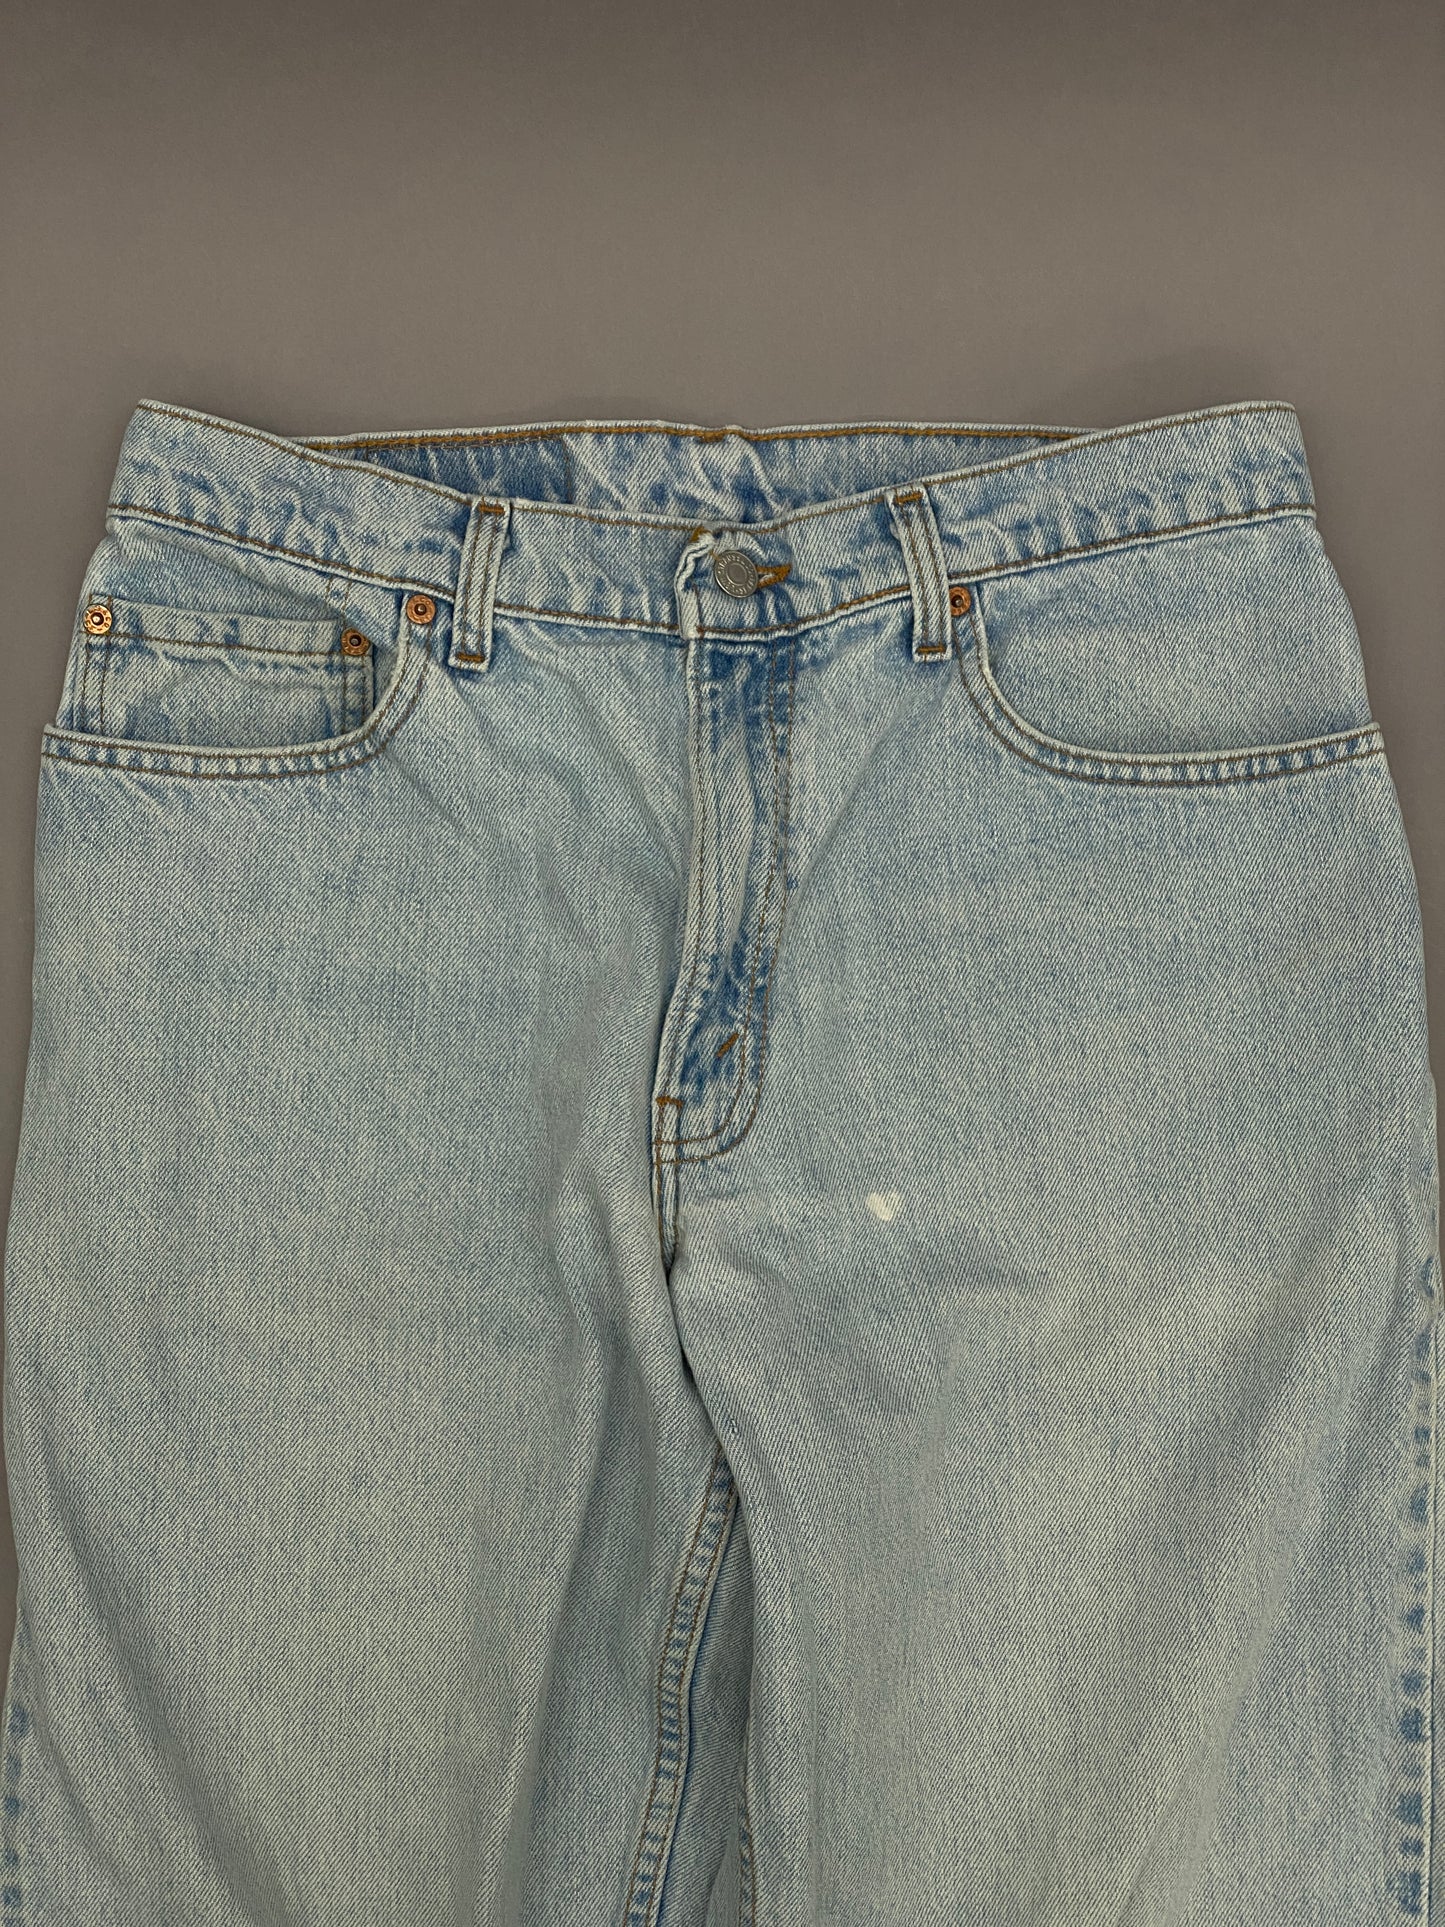 Levis 560 Vintage Blue Jeans - 32 x 32